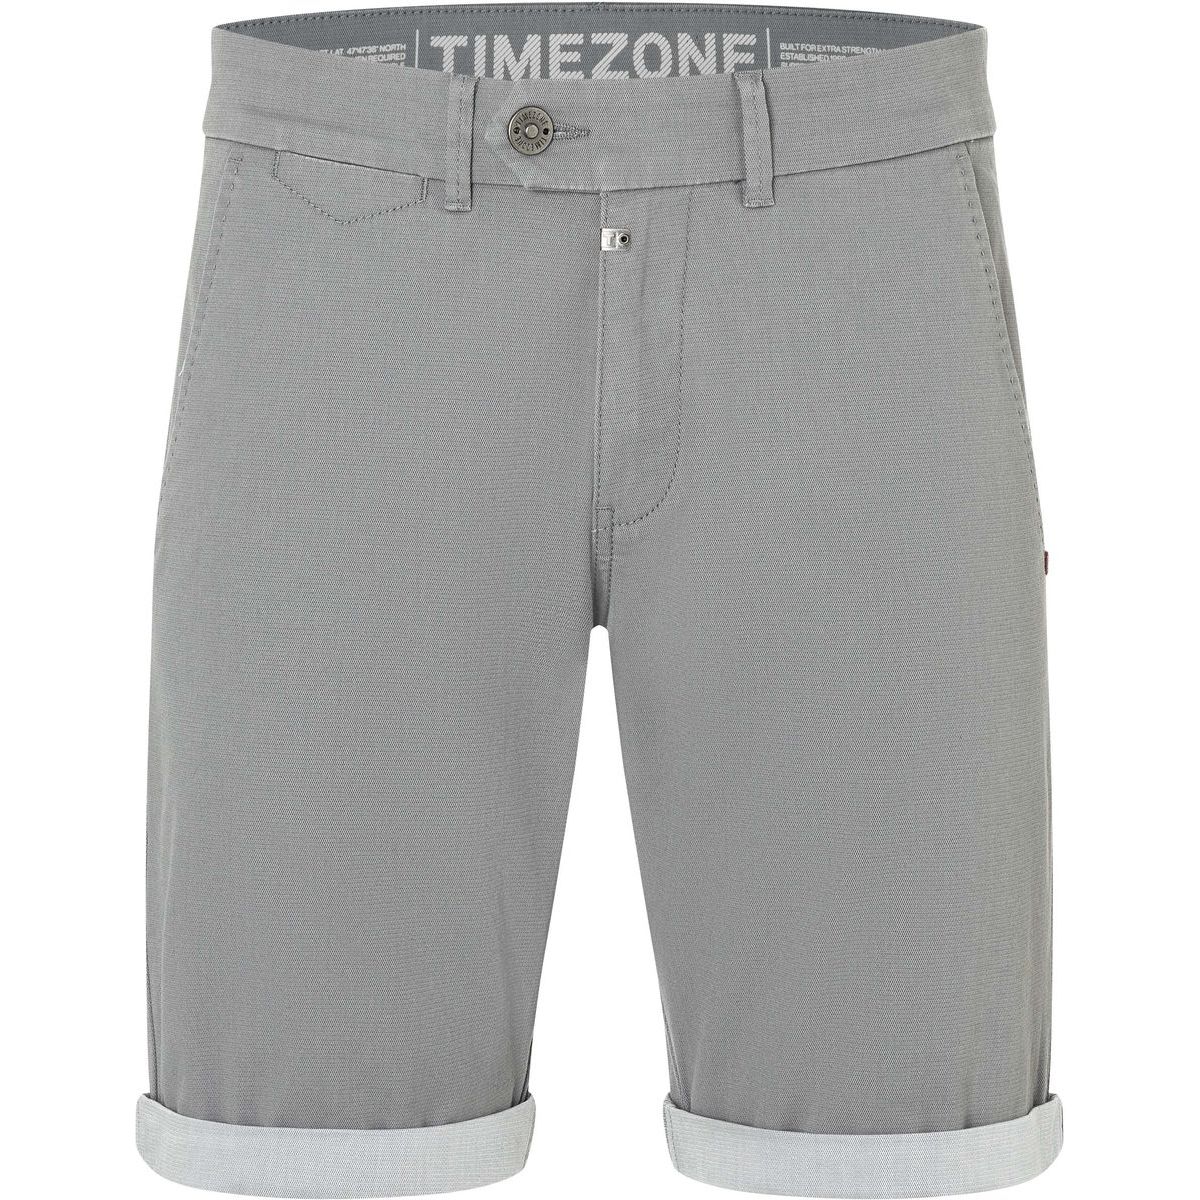 Slim JannoTZ Shorts